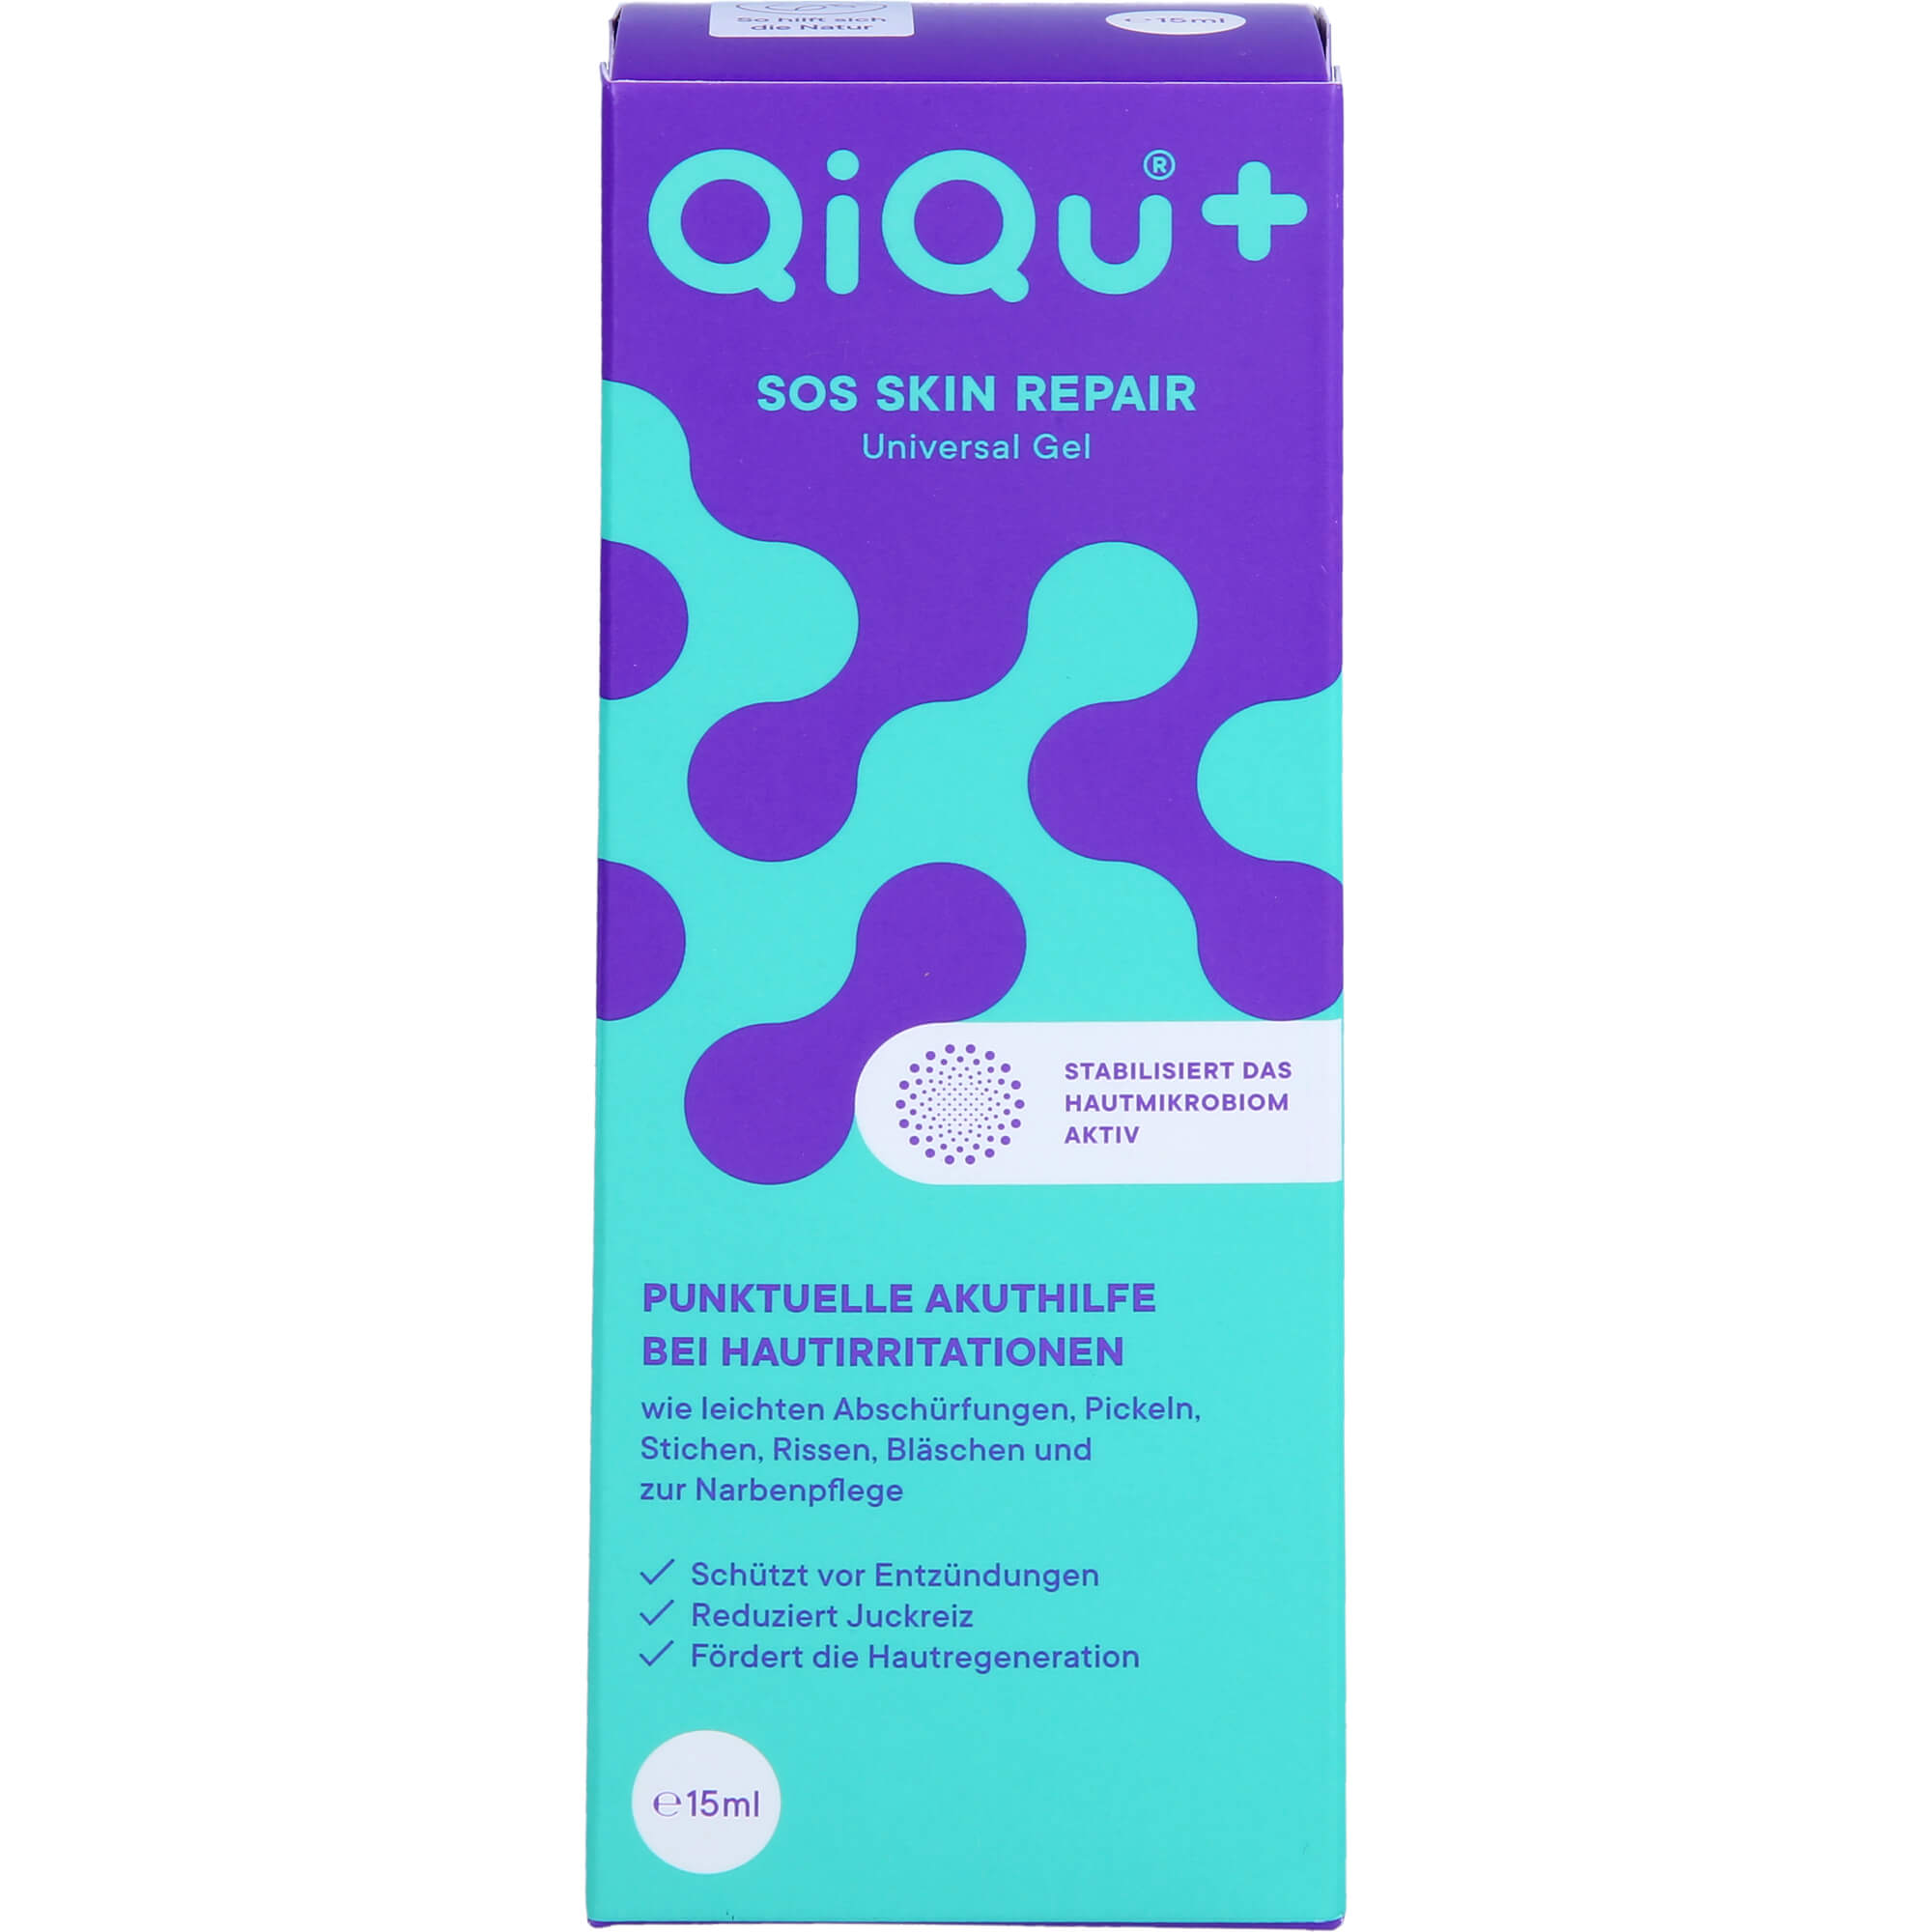 QIQU+ SOS Skin Repair Universal Gel